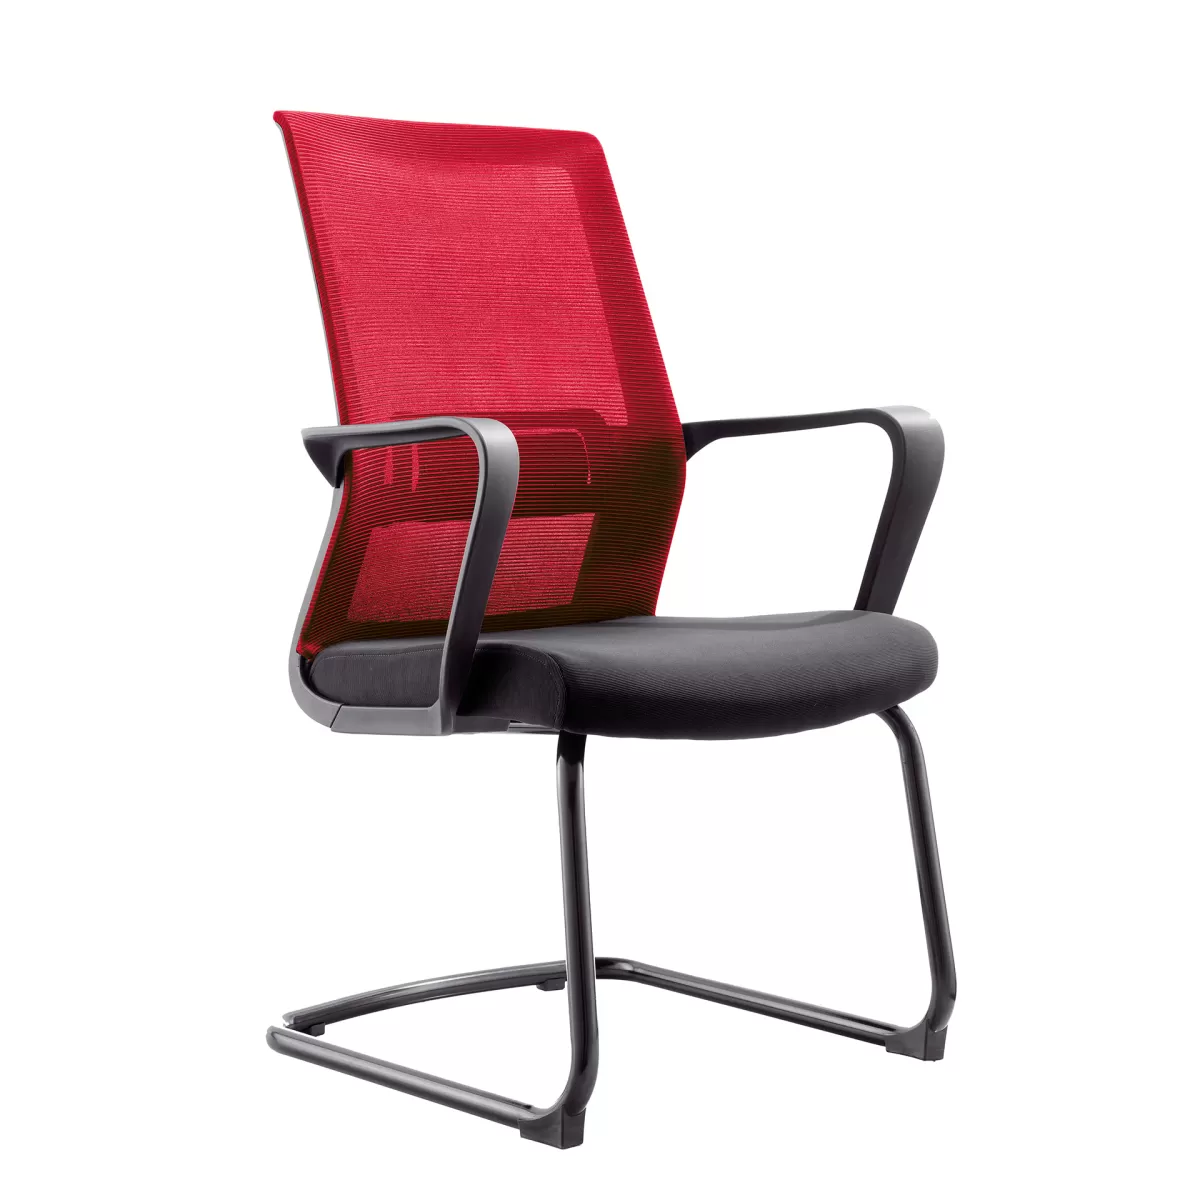 RFG Посетителски стол Smart M, дамаска и меш, черна седалка, червена облегалка